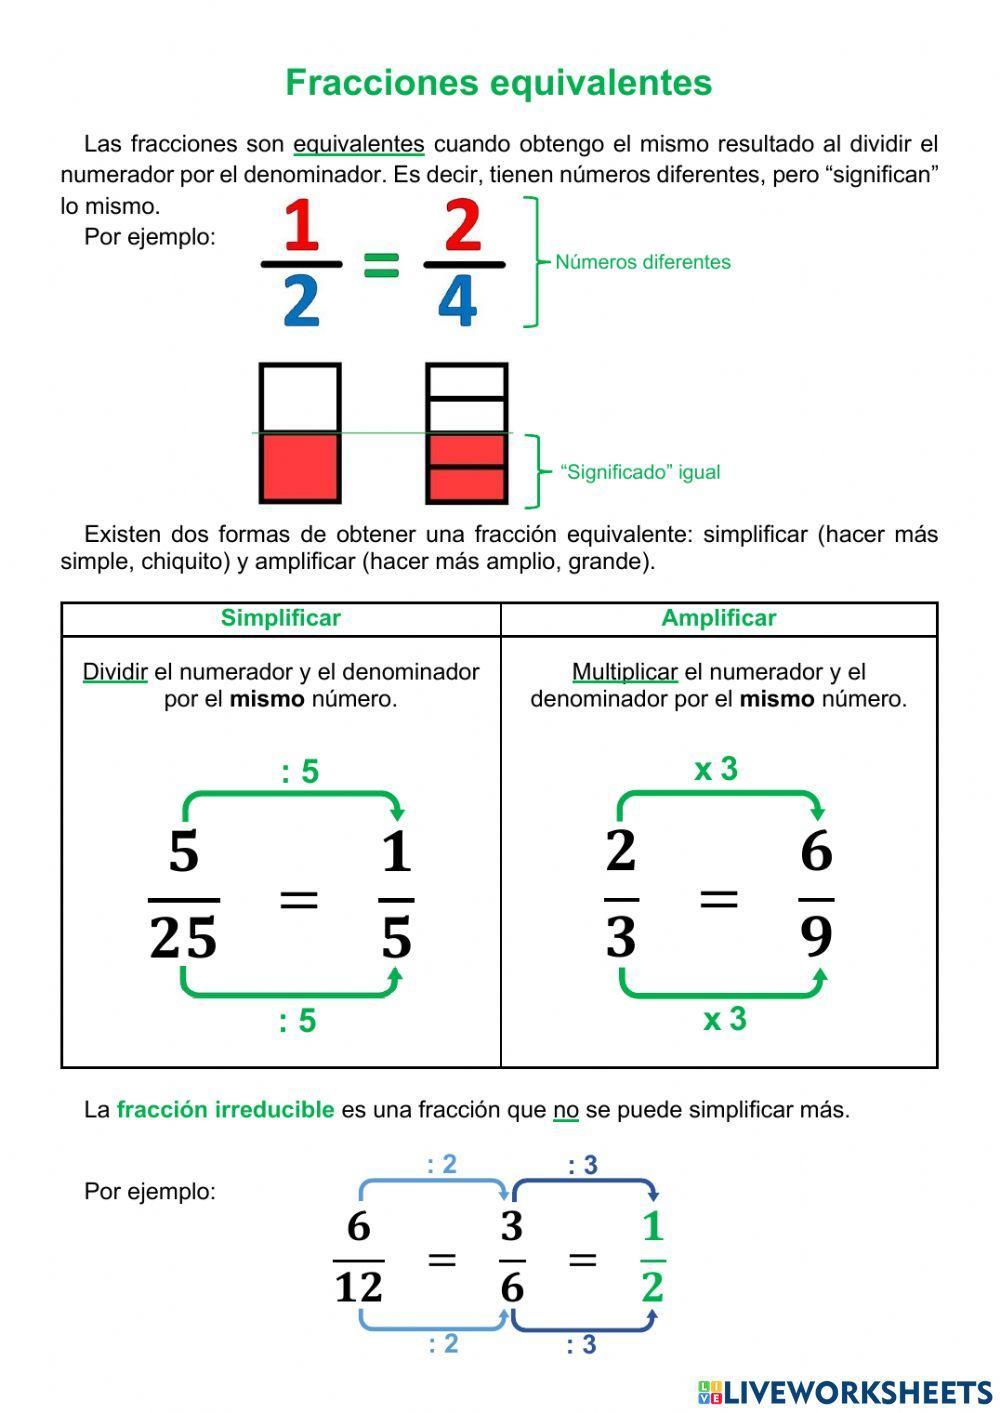 Fracciones equivalentes - Simplificar y amplificar